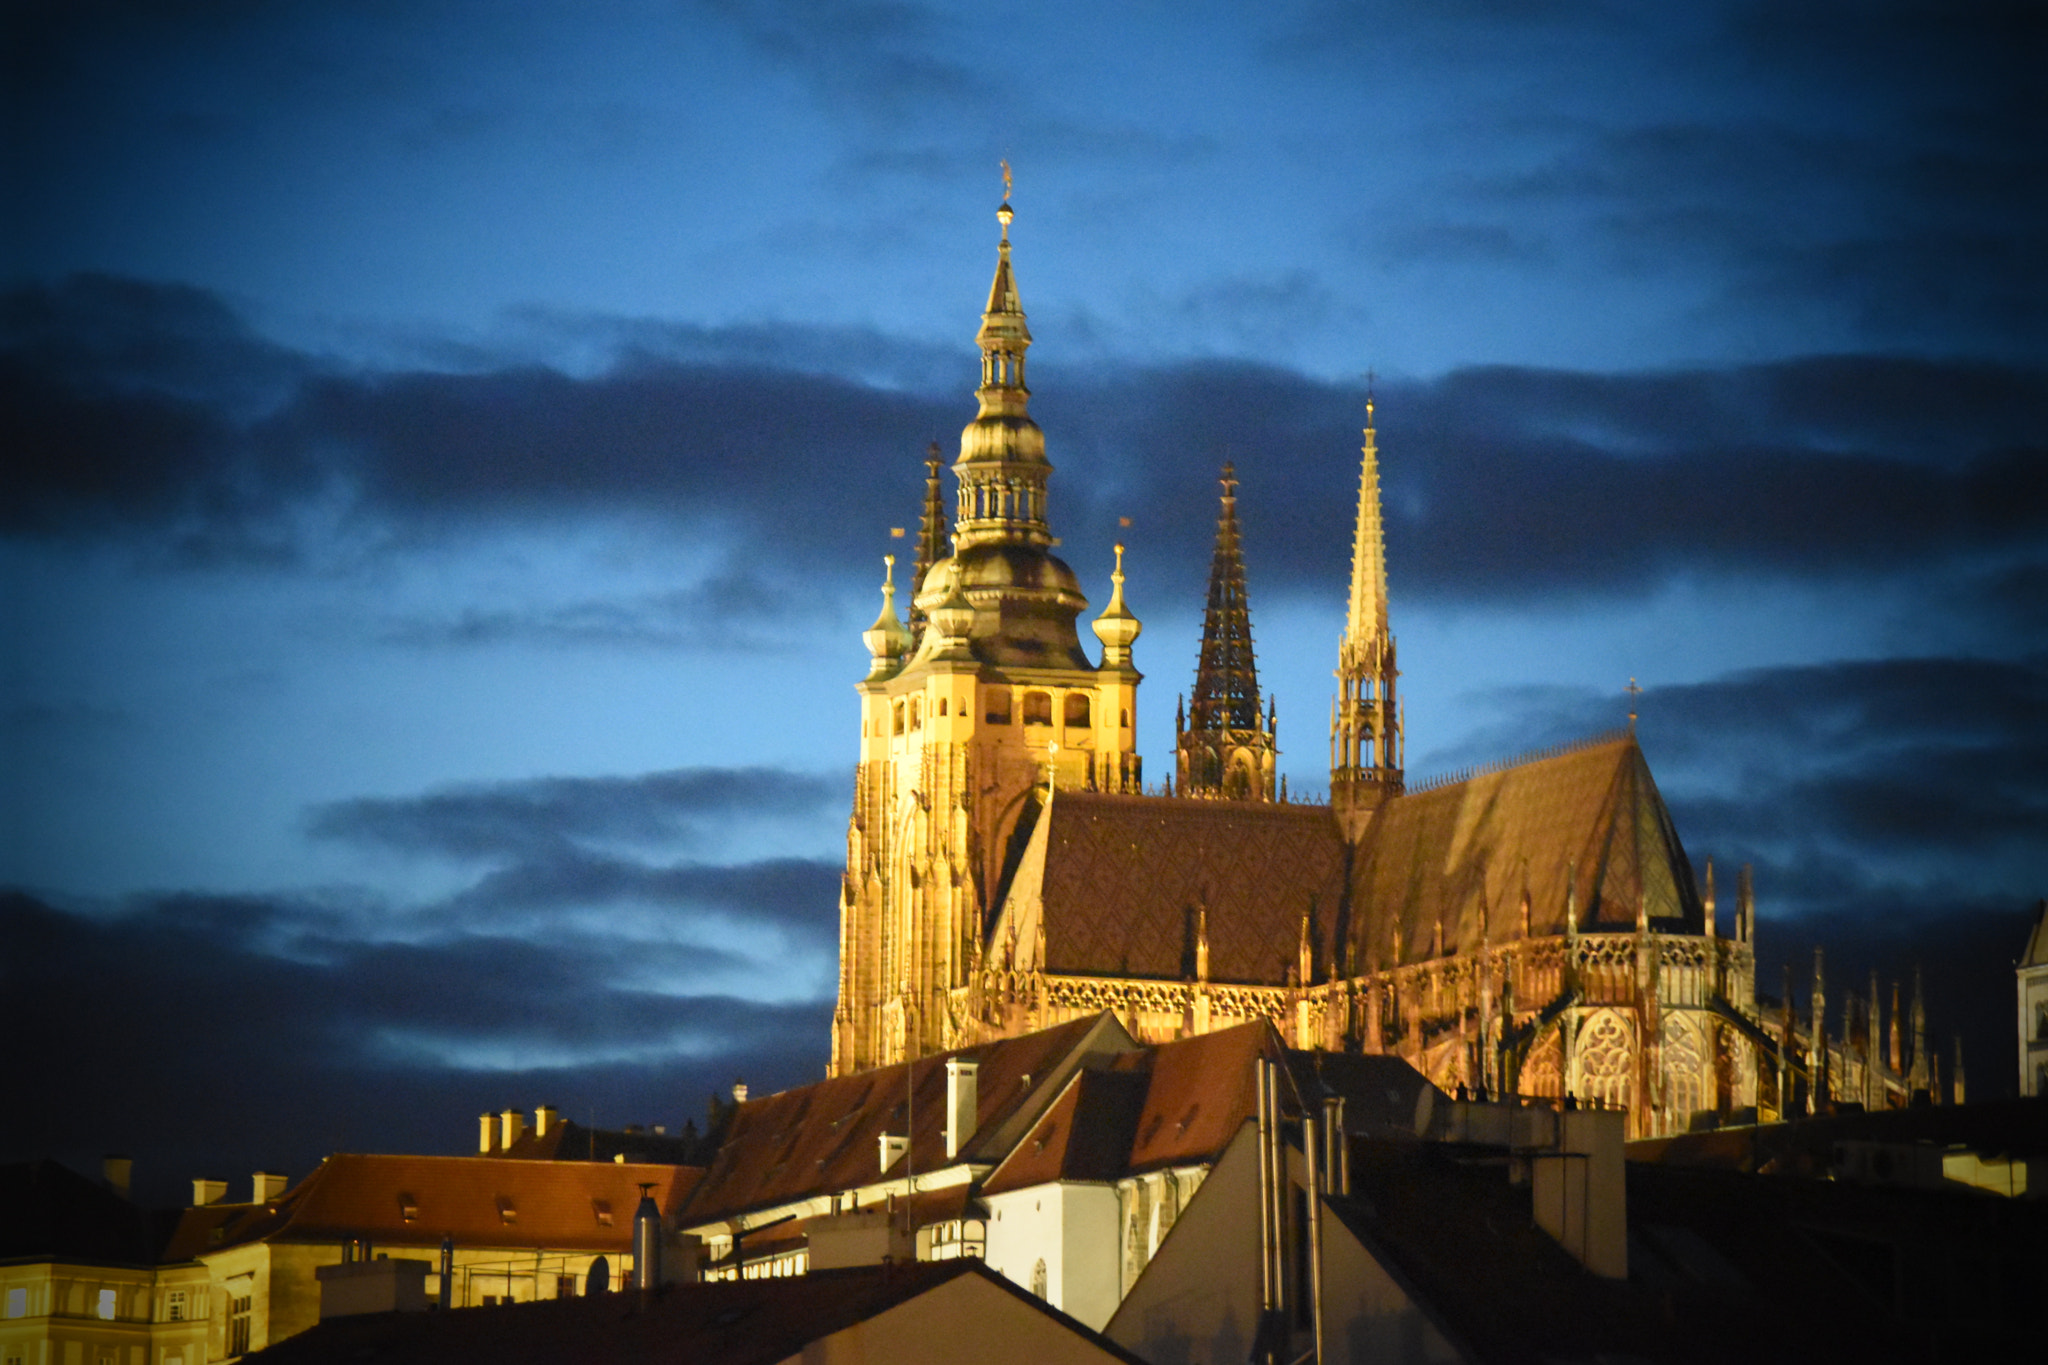 Nikon D5500 + Nikon AF-S DX Nikkor 18-300mm F3.5-5.6G ED VR sample photo. Prague castle at night with clouds photography